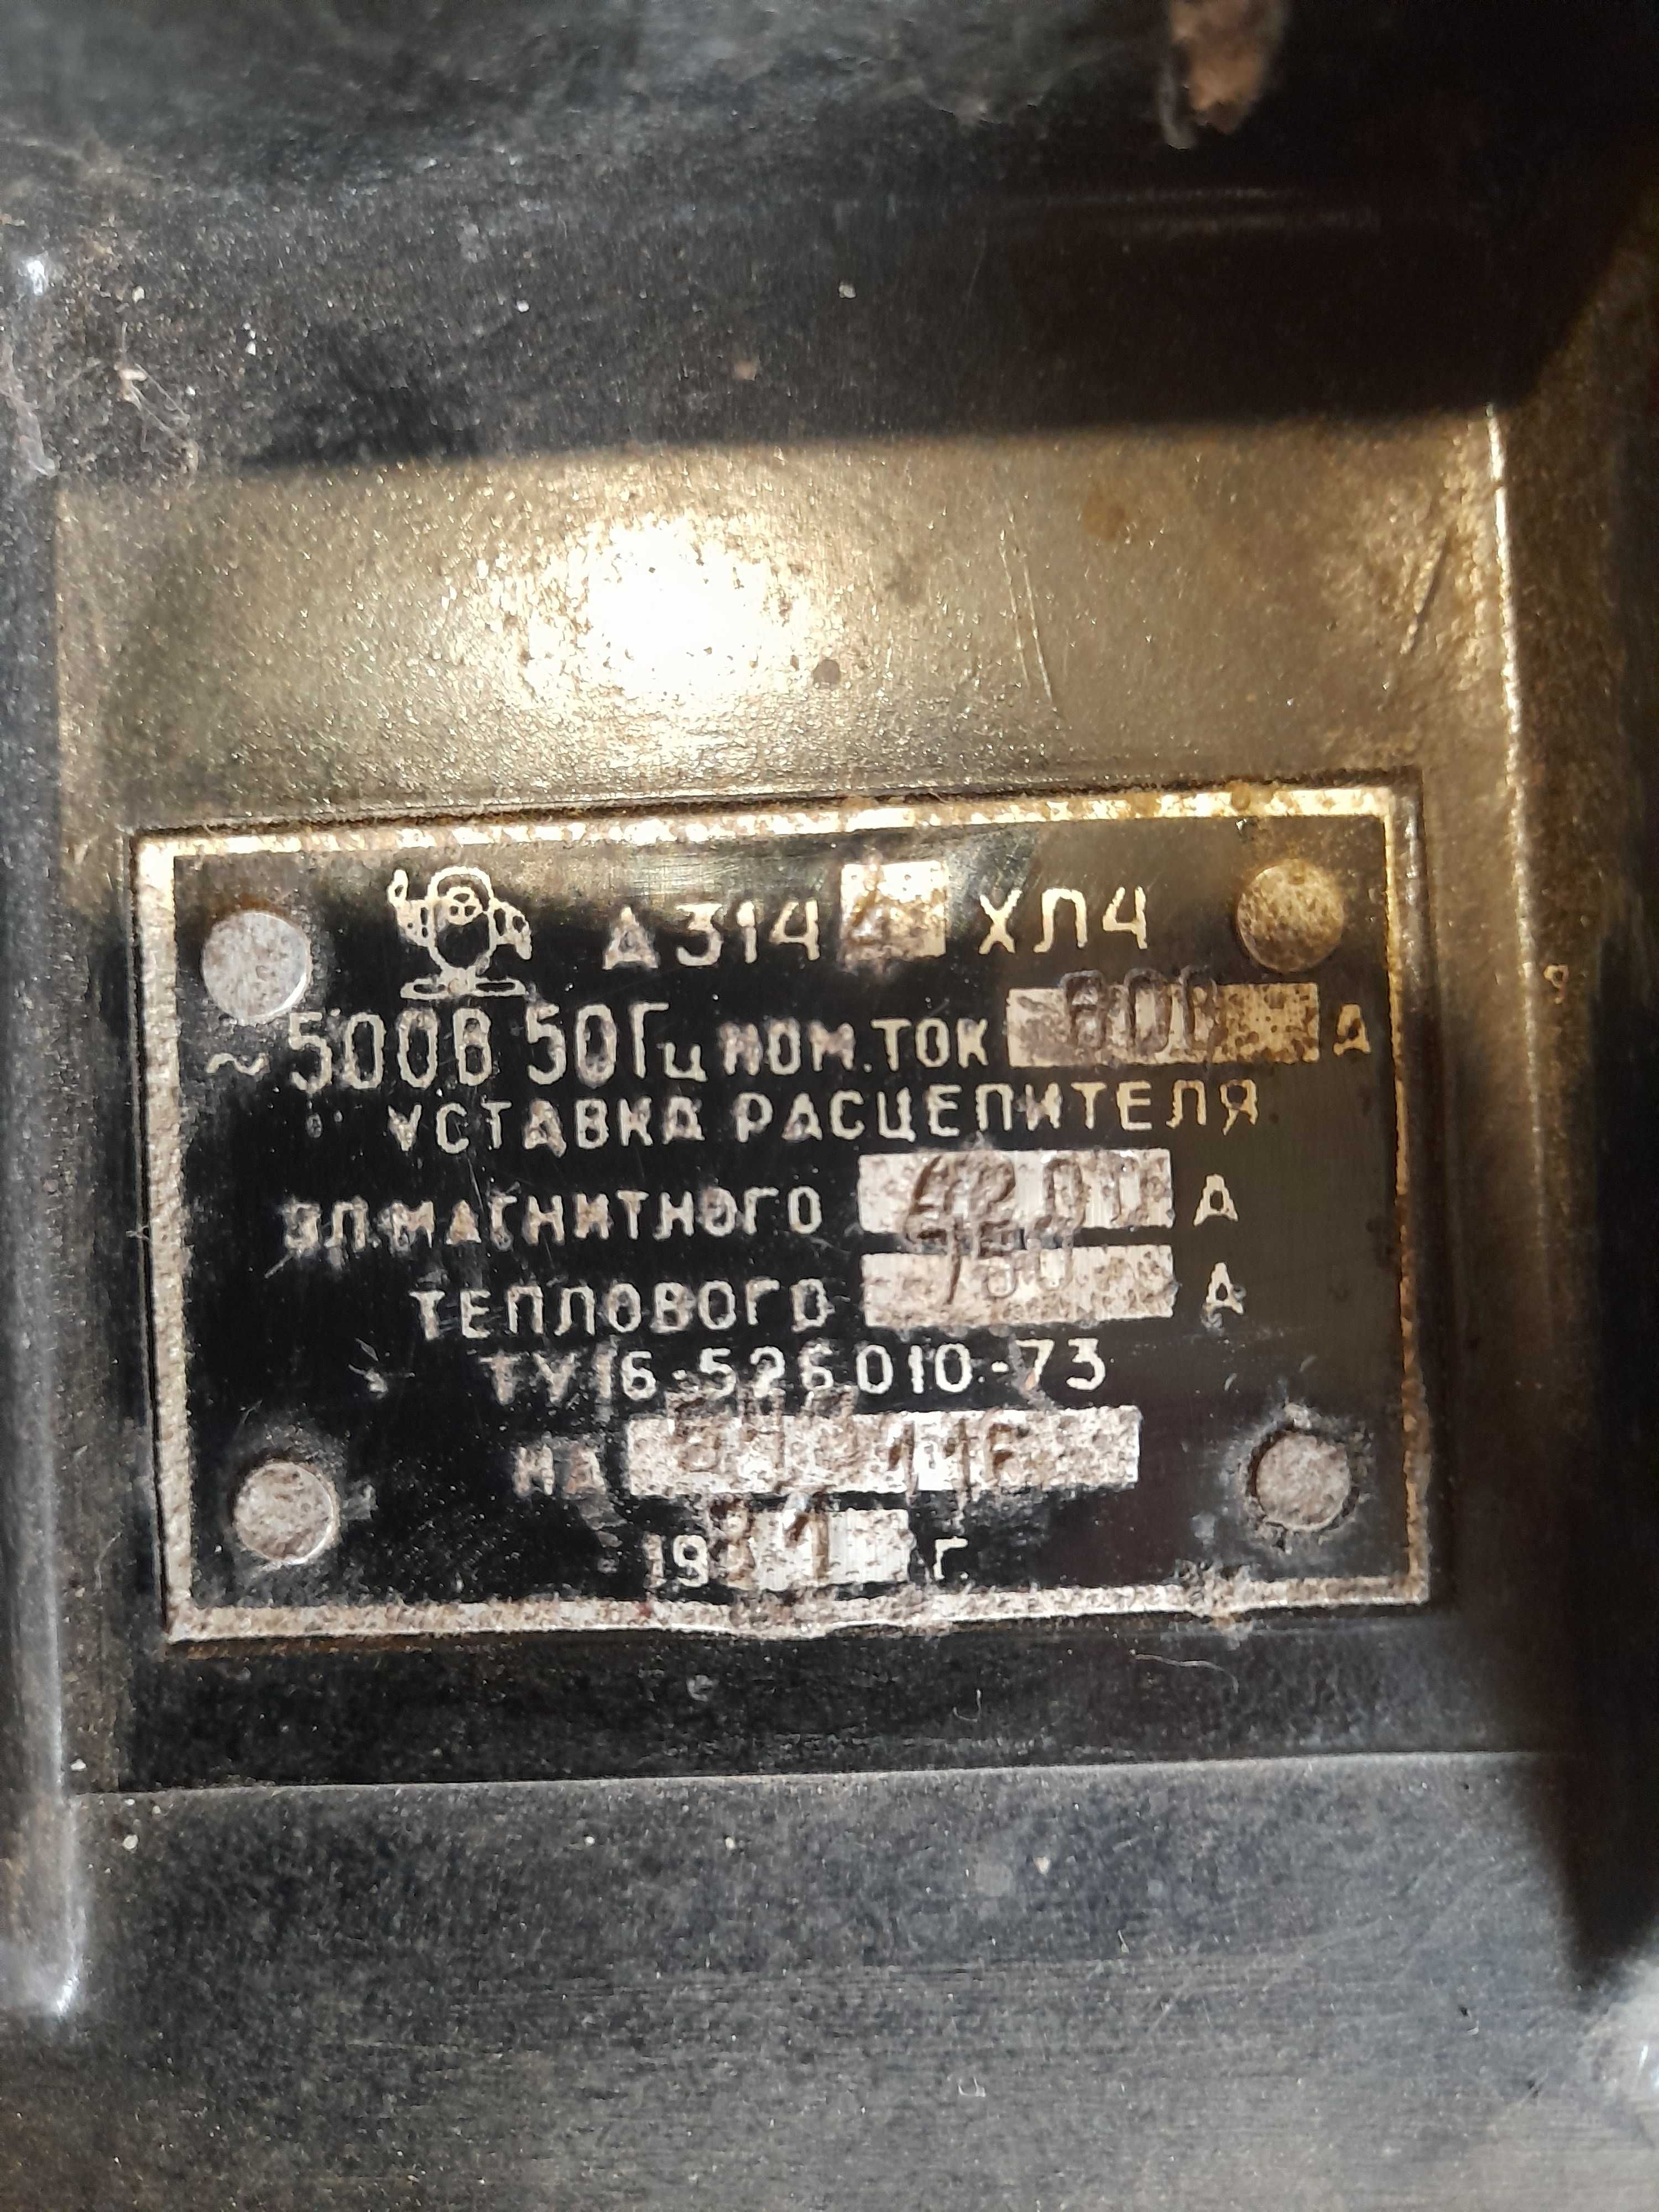 Автоматический выключатель А 3144 хл 4. 600А